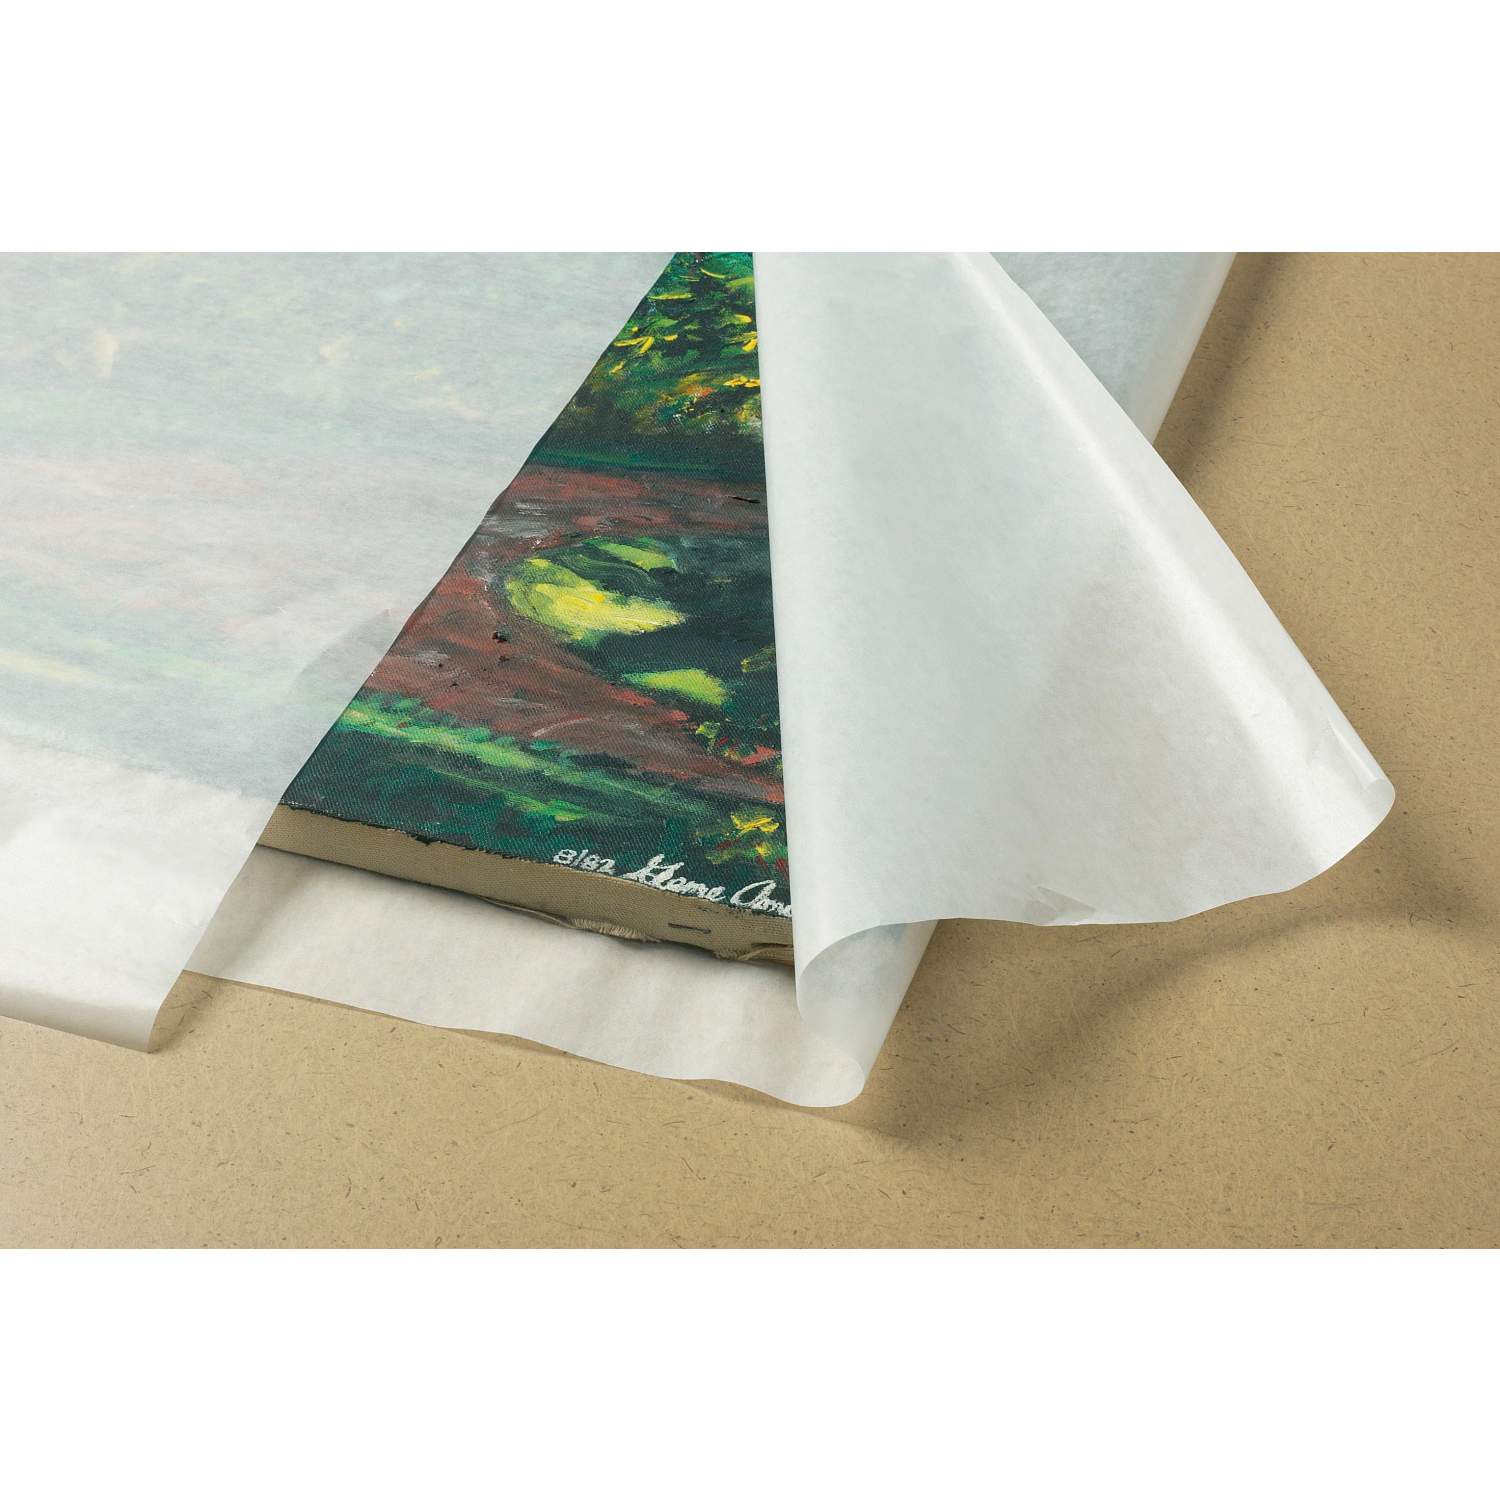 Glassine Paper Sheets for Artwork, Crafts, Baked Goods (12 in, 100